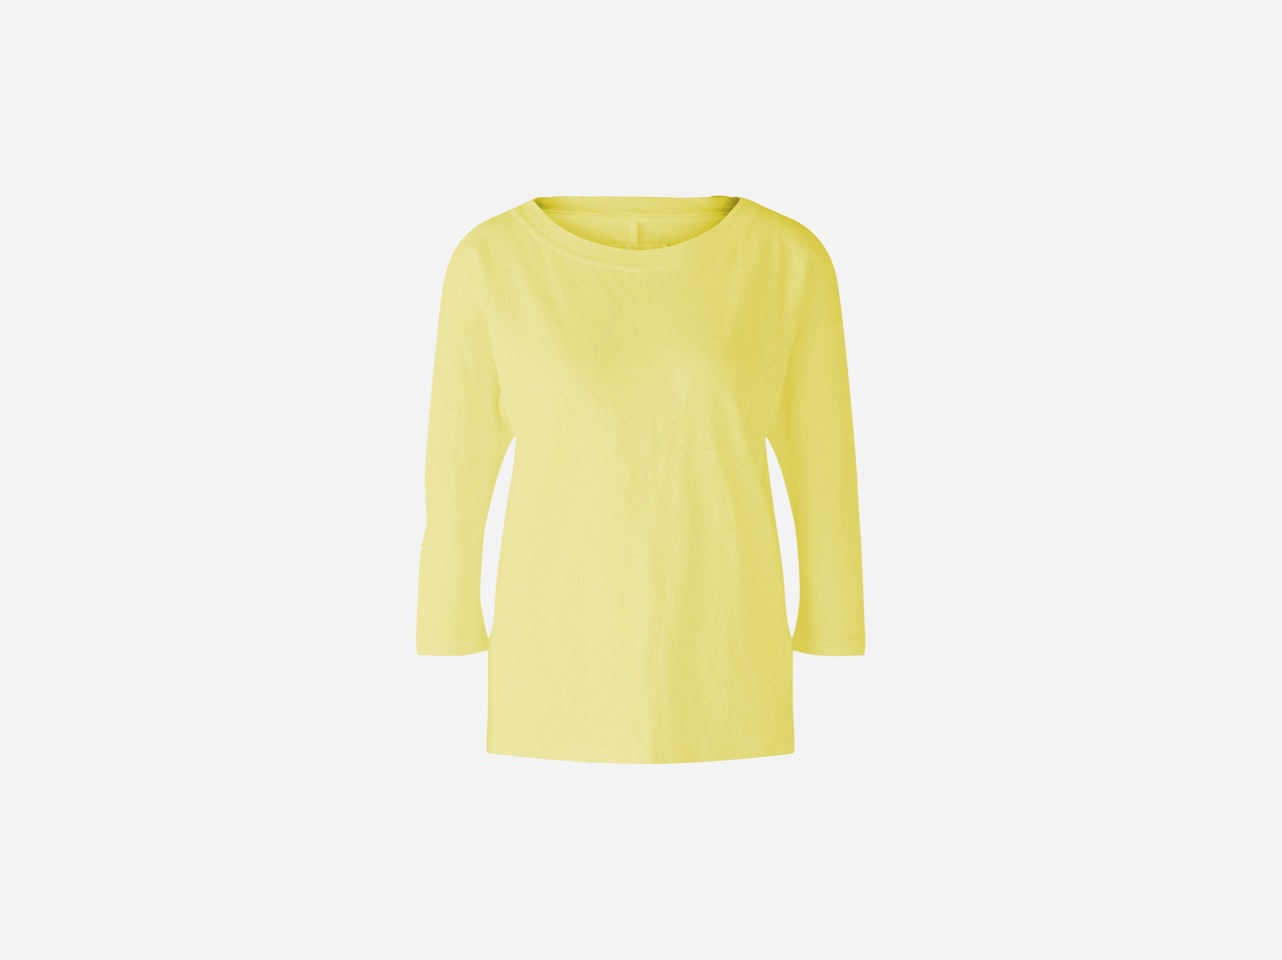 Bild 1 von T-shirt linen jersey in yellow | Oui